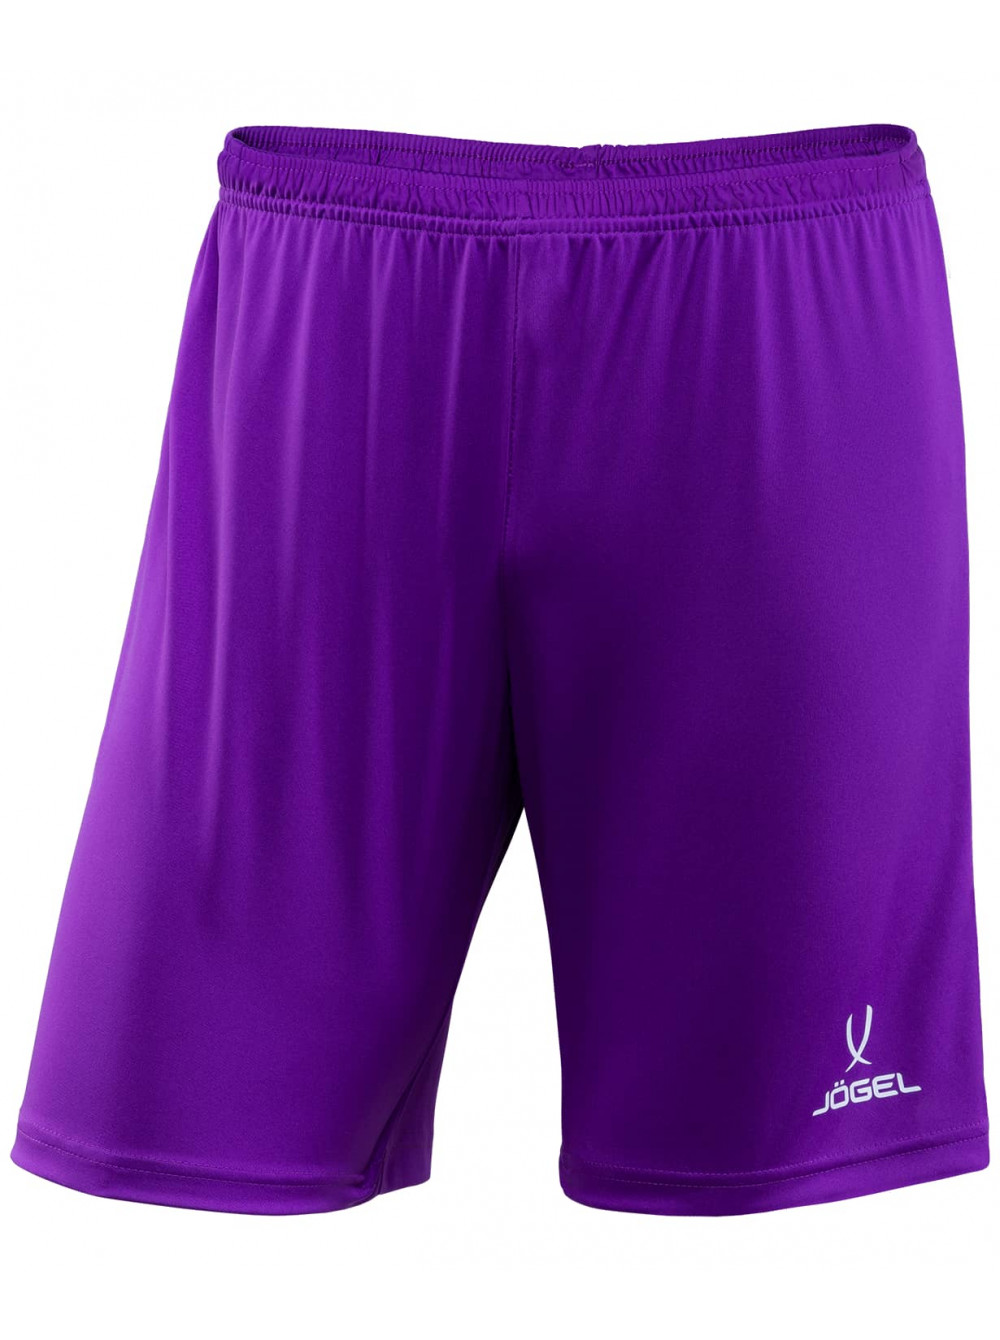 Шорты футбольные детские Jogel CAMP JFS-1120-V1-K фиолетовый/белый, р. 134 шорты футбольные jogel jft 1120 v1 фиолетовый белый